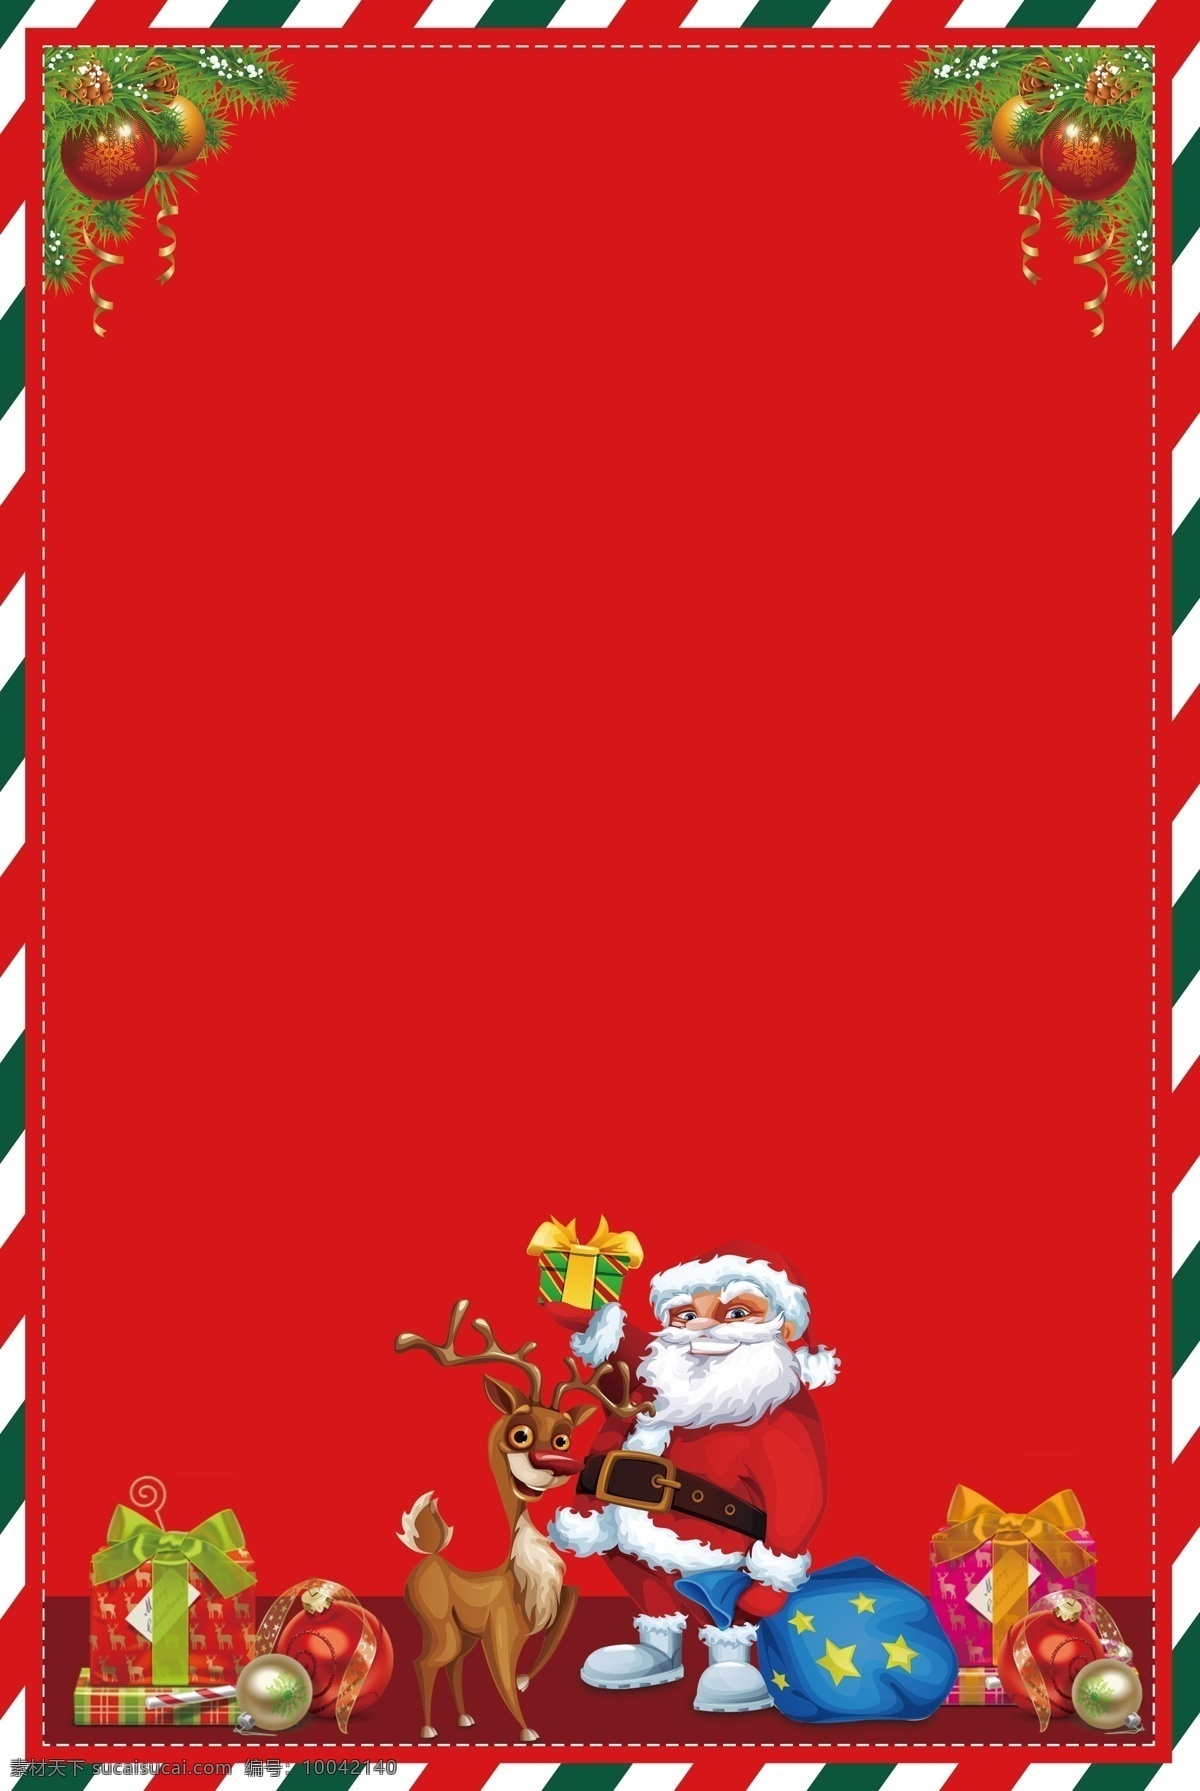 2018 圣诞节 活动 背景 红色 圣诞老人 圣诞海报 圣诞素材 圣诞快乐 圣诞铃铛 麋鹿 圣诞礼物 圣诞节背景 圣诞大促 圣诞节展板 新年海报 节日背景